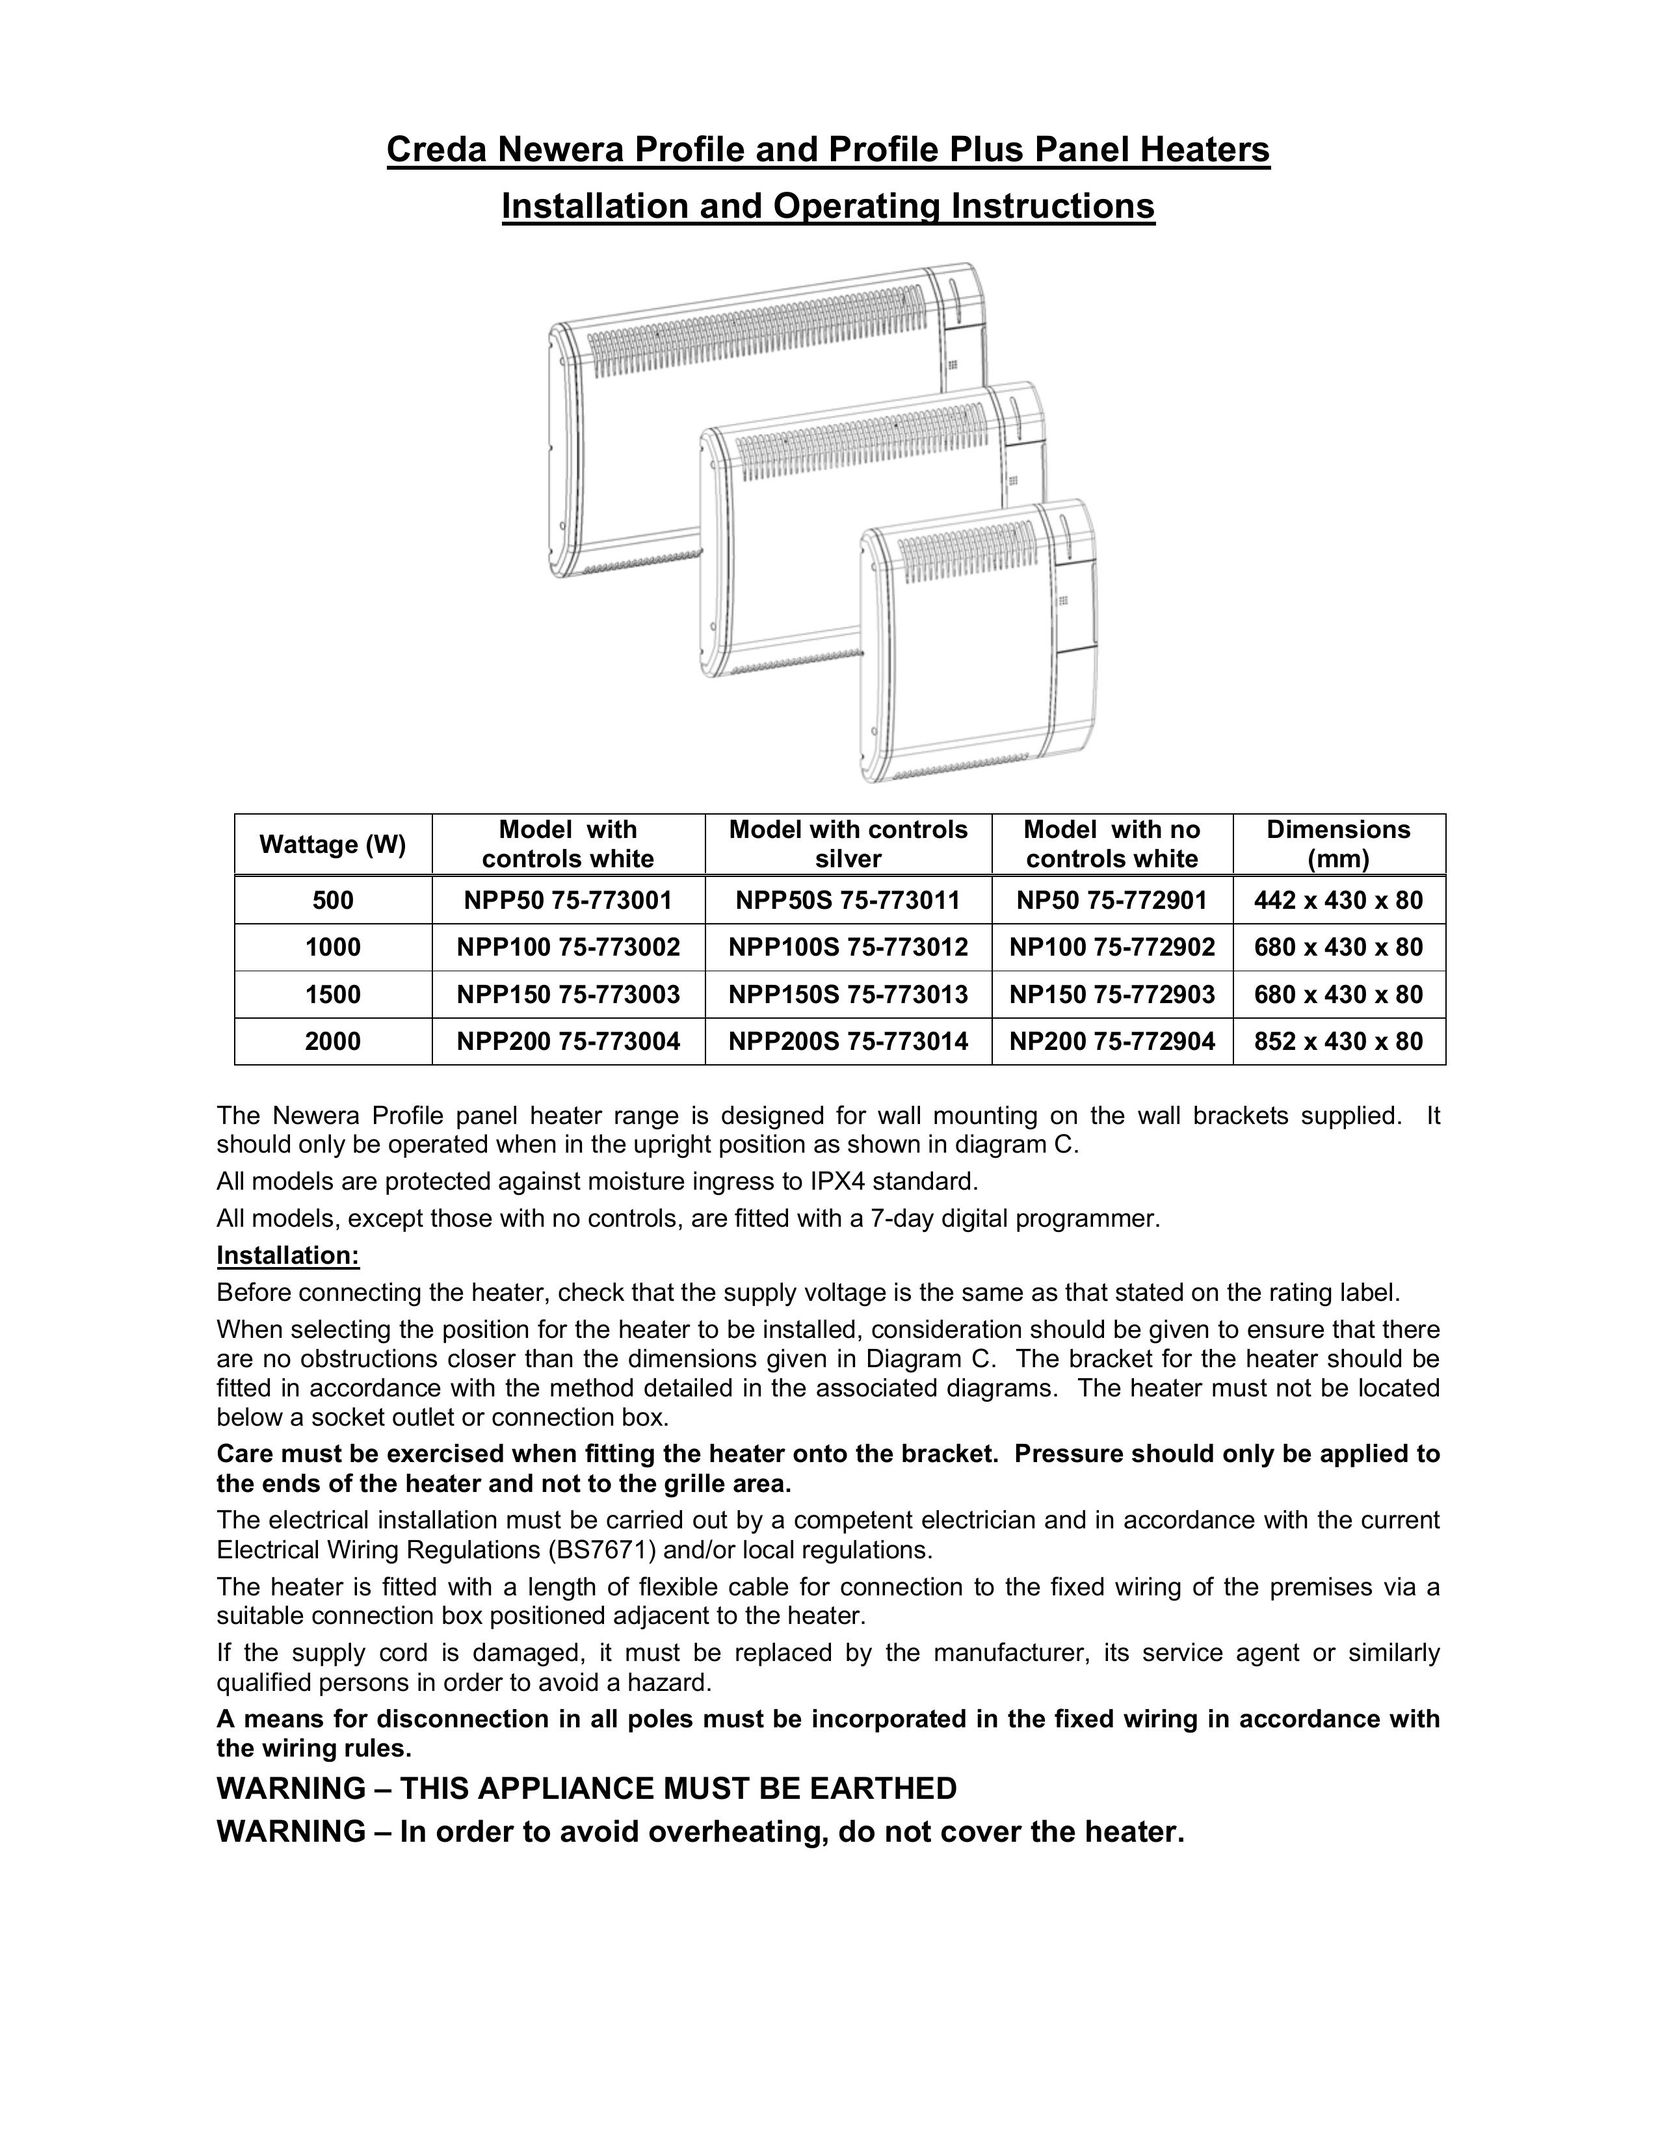 Creda NPP150 75-773003 Air Conditioner User Manual